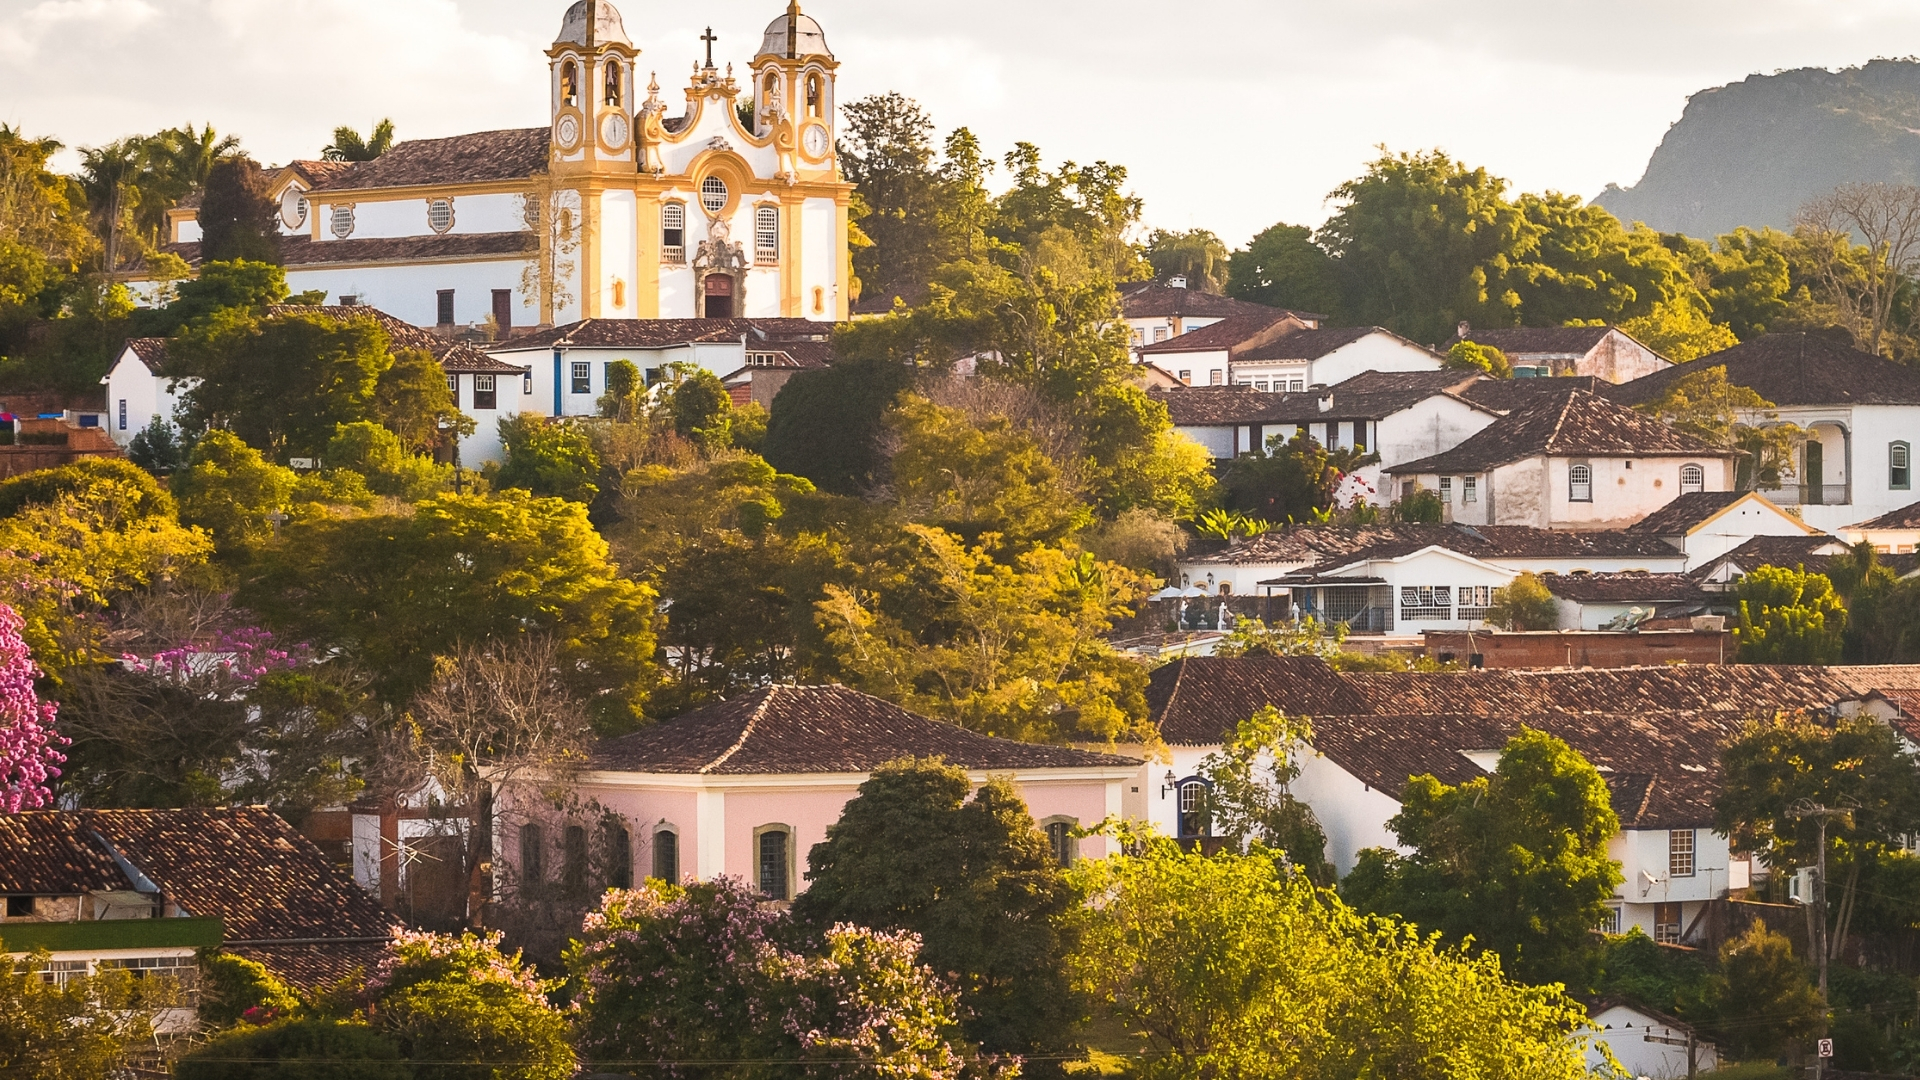 Superbid Marketplace tem diversos imóveis em Minas Gerais com descontos de até 70%